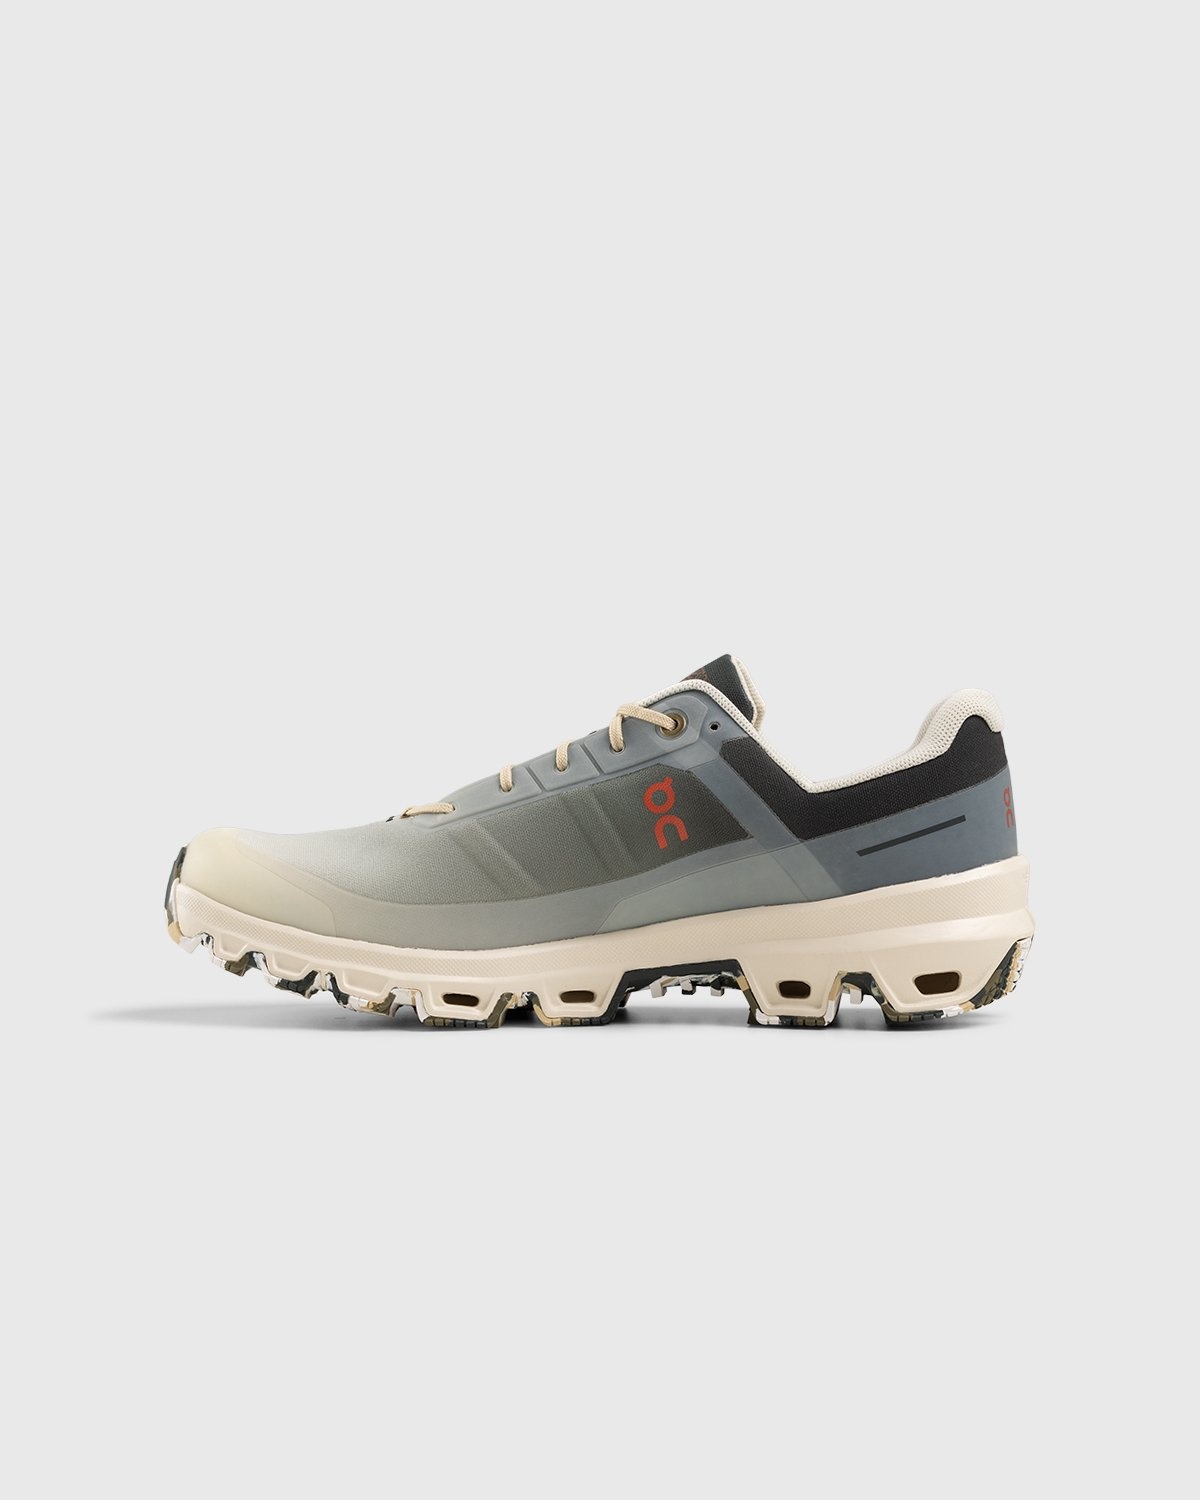 Loewe x On – Men's Cloudventure Gradient Khaki - Low Top Sneakers - Grey - Image 2